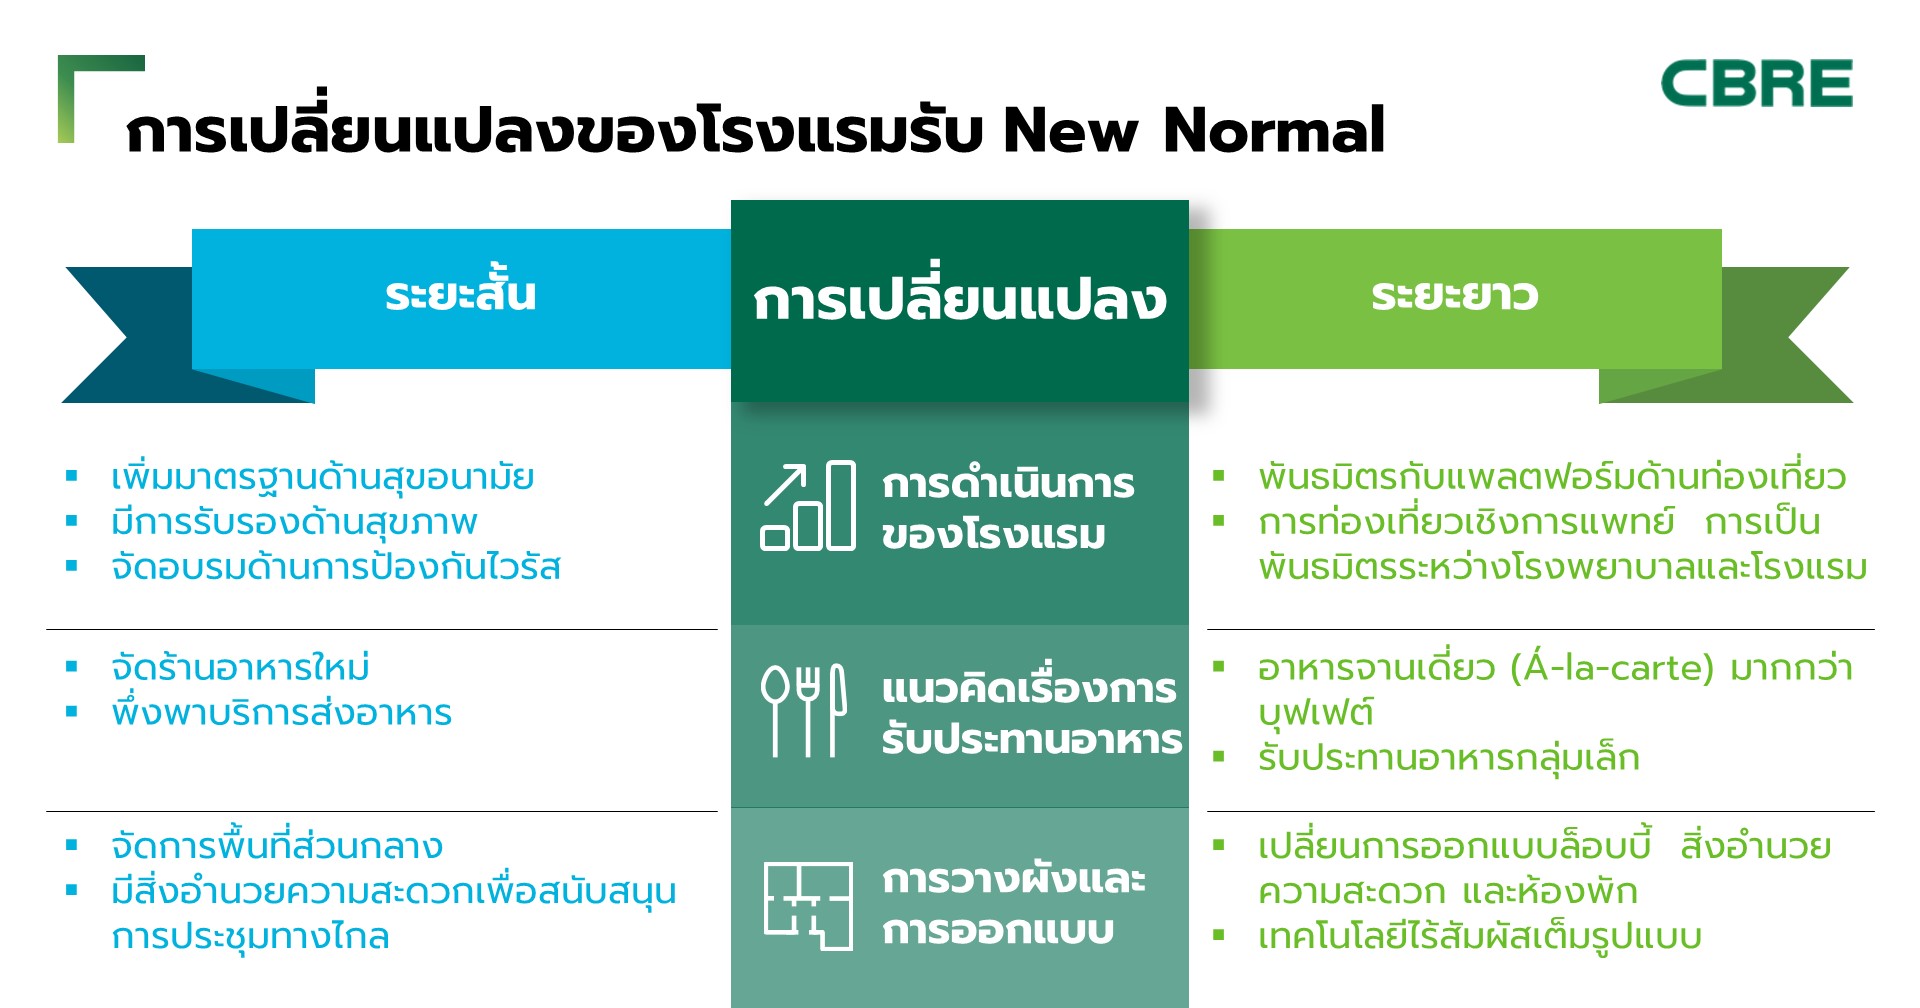 ซีบีอาร์อีเผยตลาดโรงแรมไทยเปลี่ยนรับ New Normal